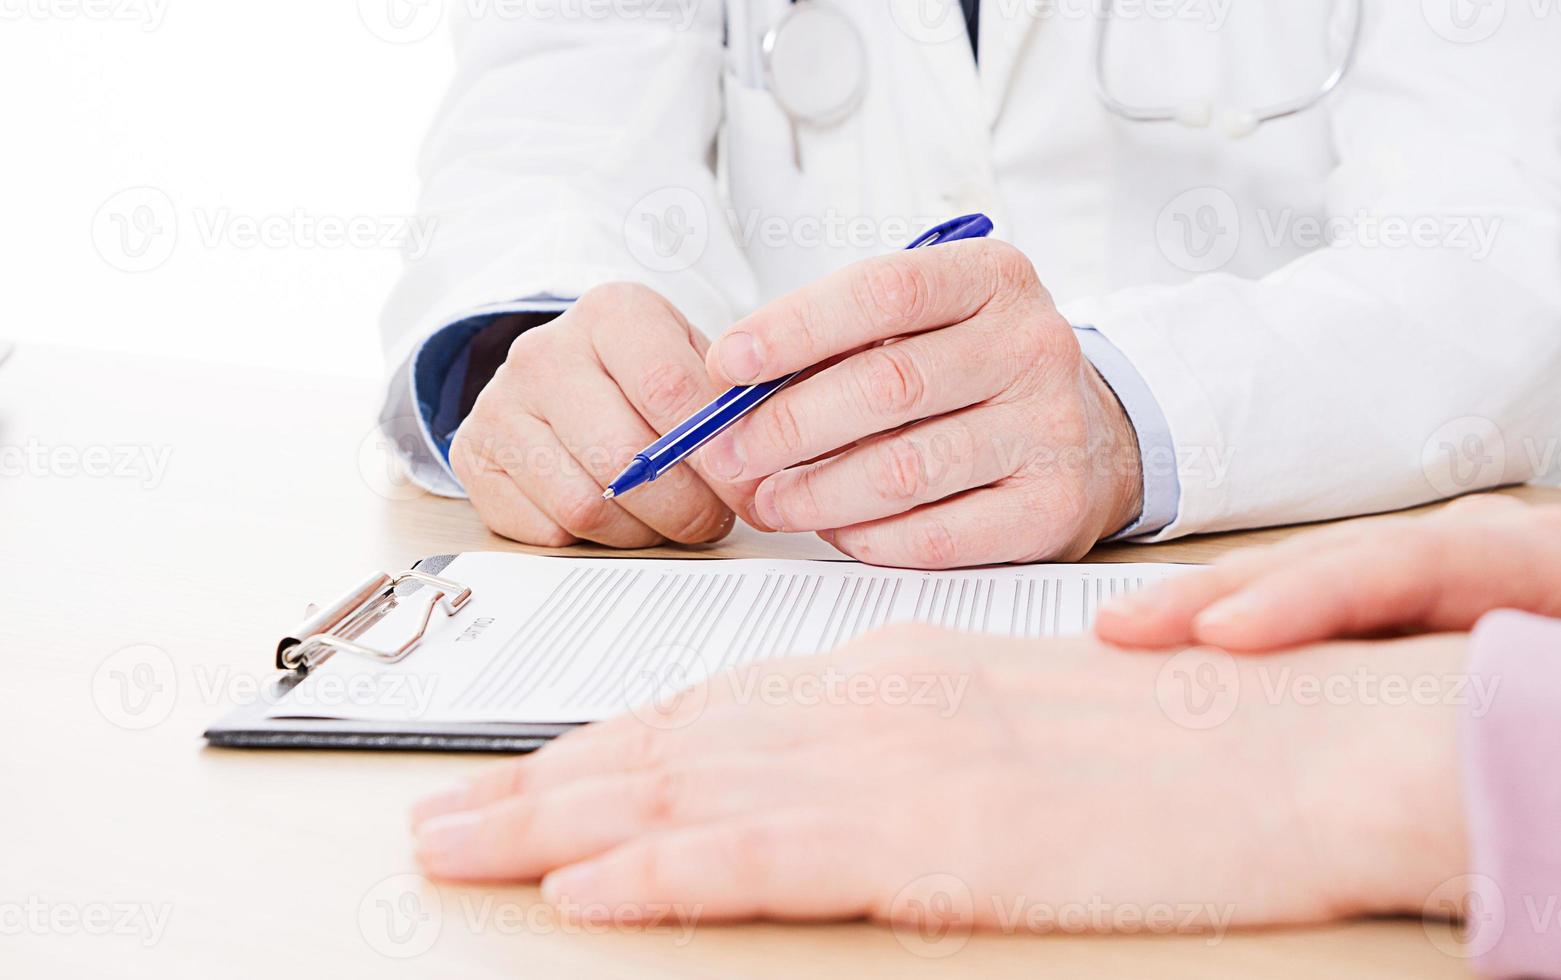 médico e paciente estão discutindo algo, apenas mãos à mesa, seguro médico. foto